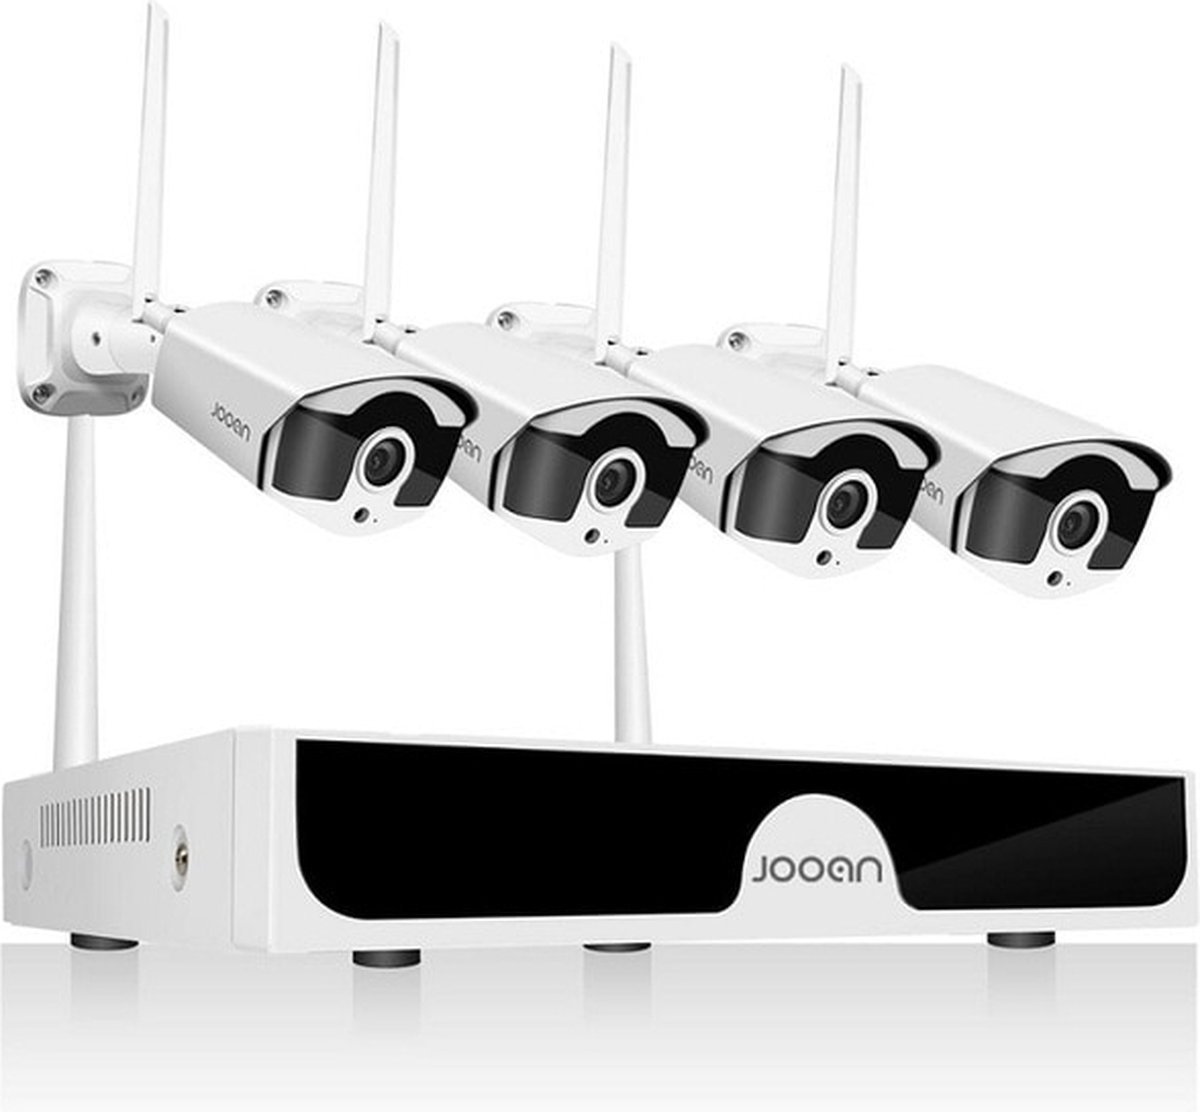 BolGalaxy - Beveiligingscamera set met 4 Cameras Outdoor Buiten - Home Security Camera Systeem - Wifi Camera Set - Beveiligingscamera - 4 Camera’s - Nachtzicht - beveiligingscamera draadloos buiten - Netstroom